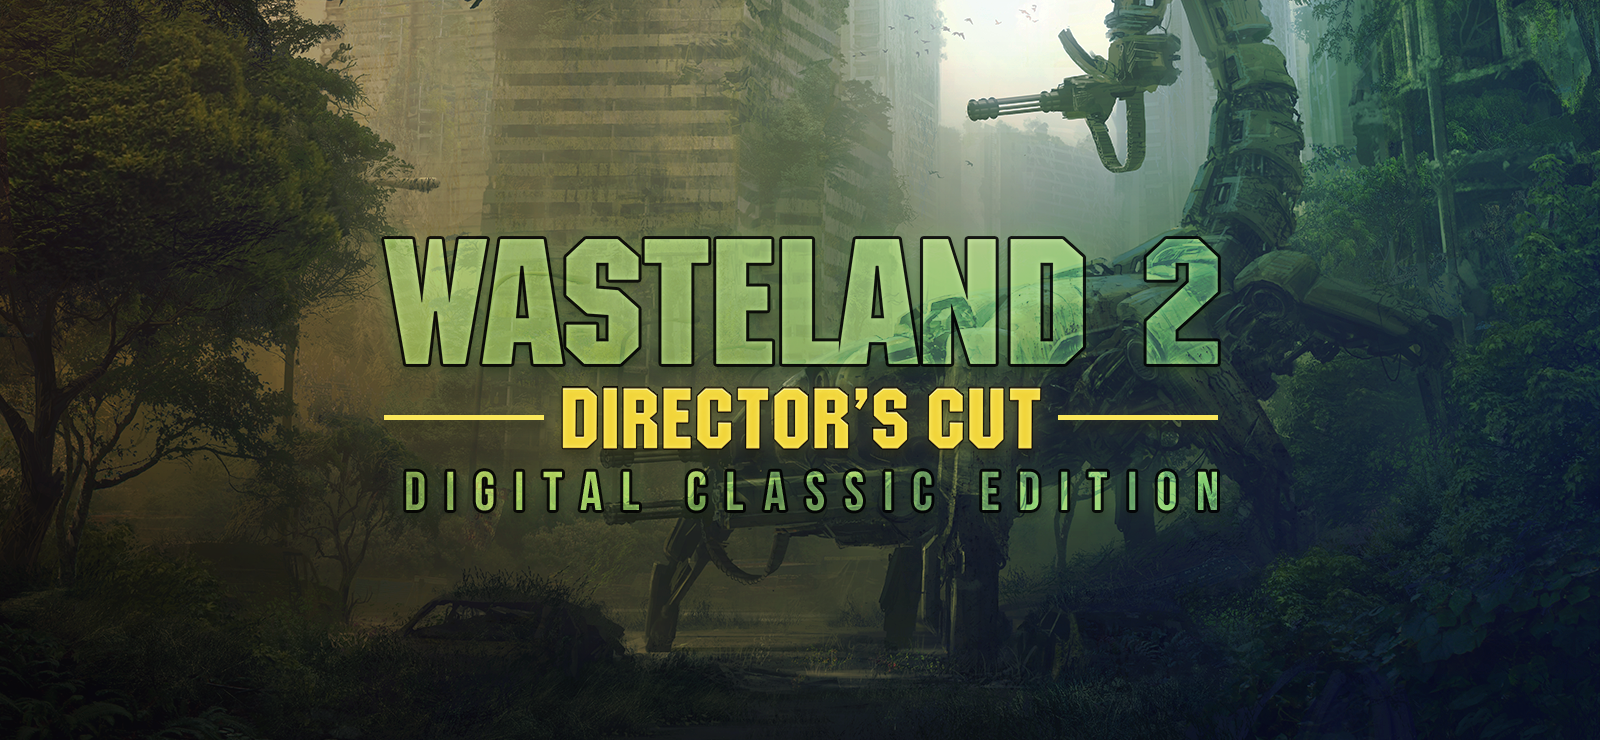 Wasteland 2 Director's Cut Digital Classic Edition